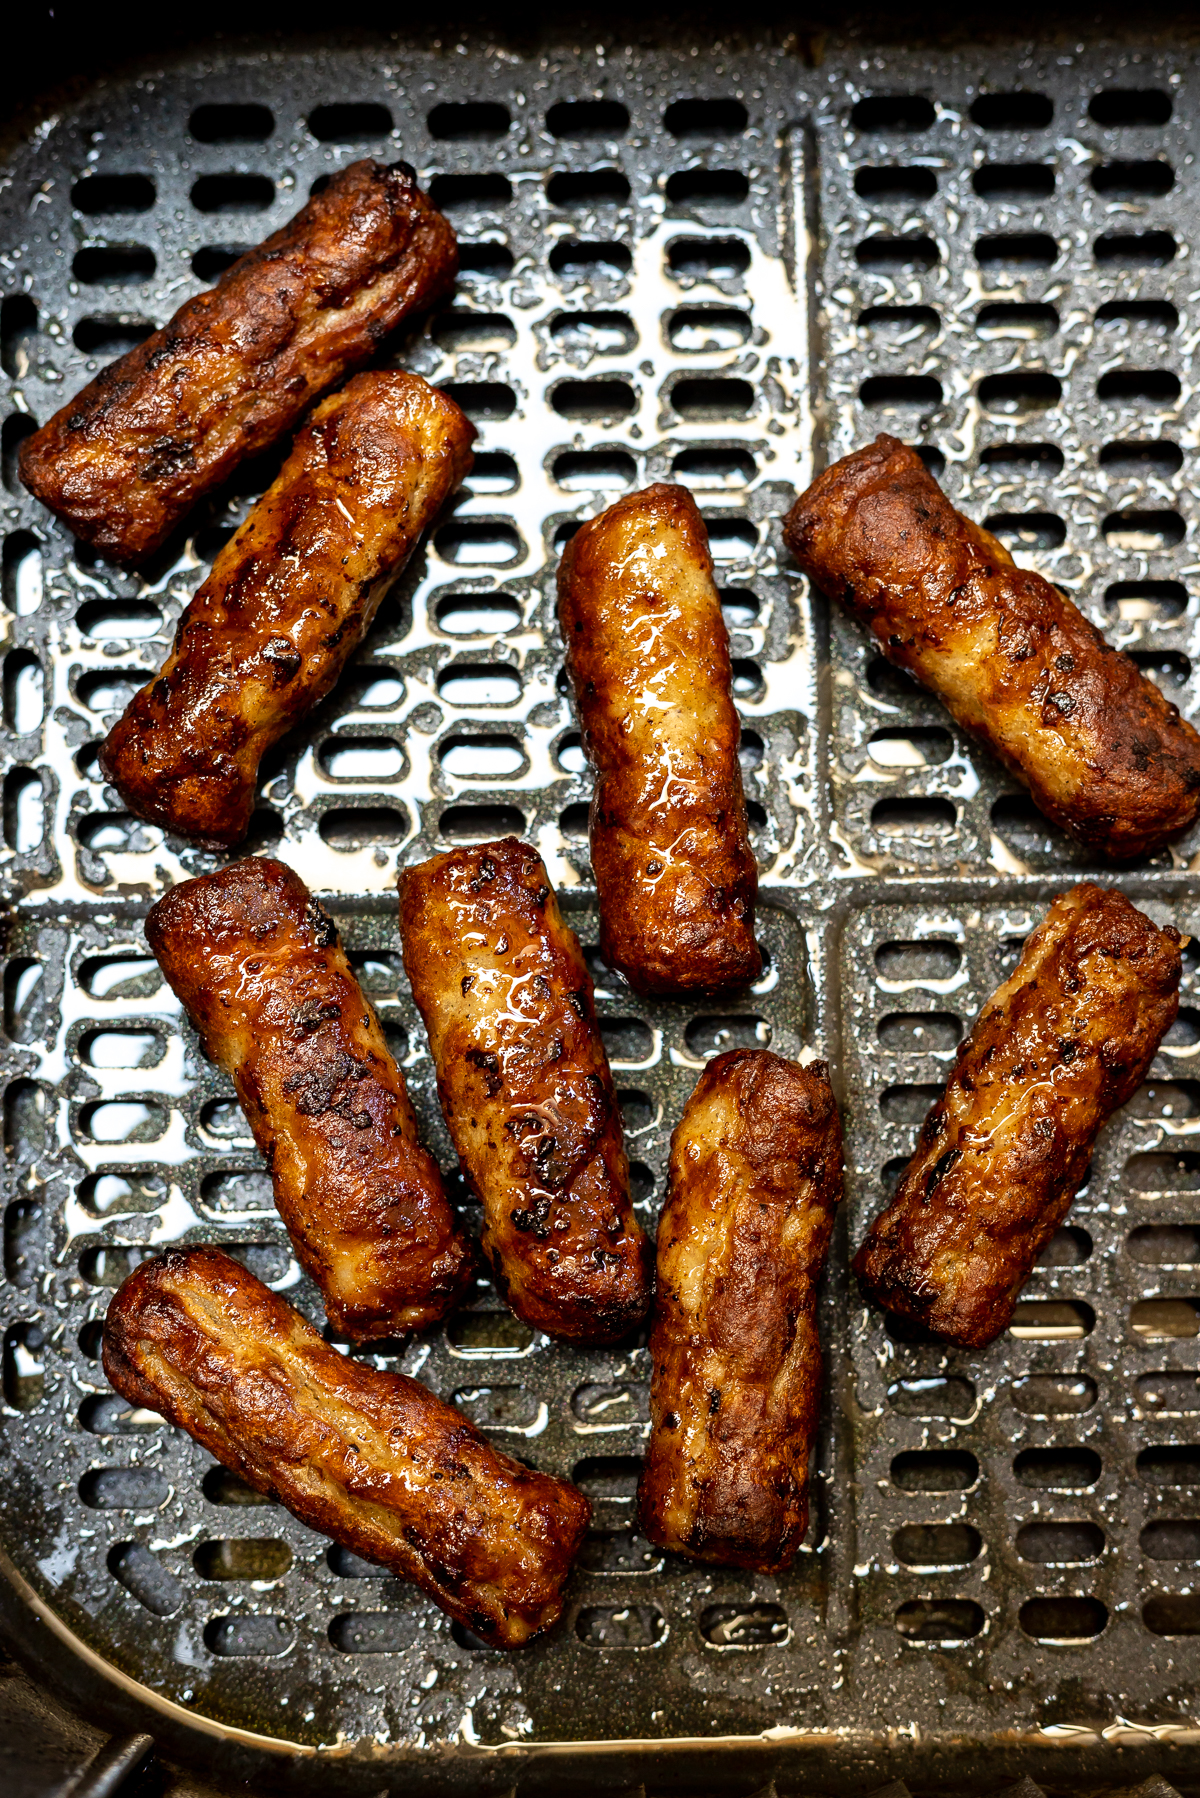 Cooking Breakfast Sausage Links In Air Fryer